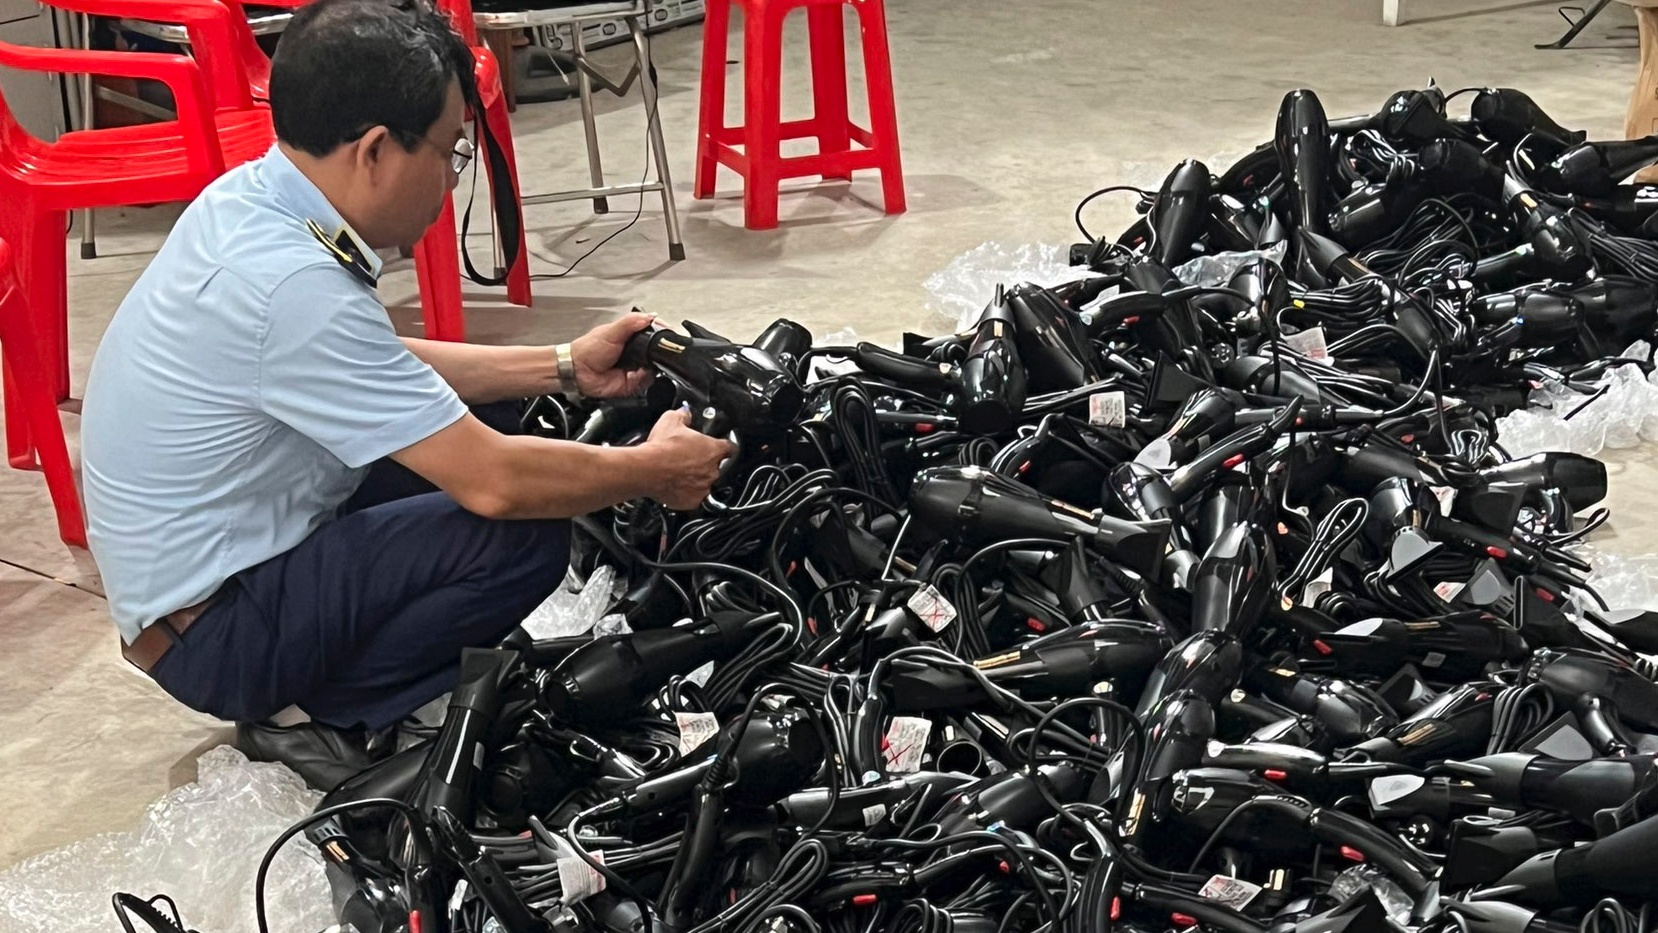 Quản lý thị trường Hà Nội tạm giữ 400 máy sấy tóc nghi giả nhãn hiệu Panasonic